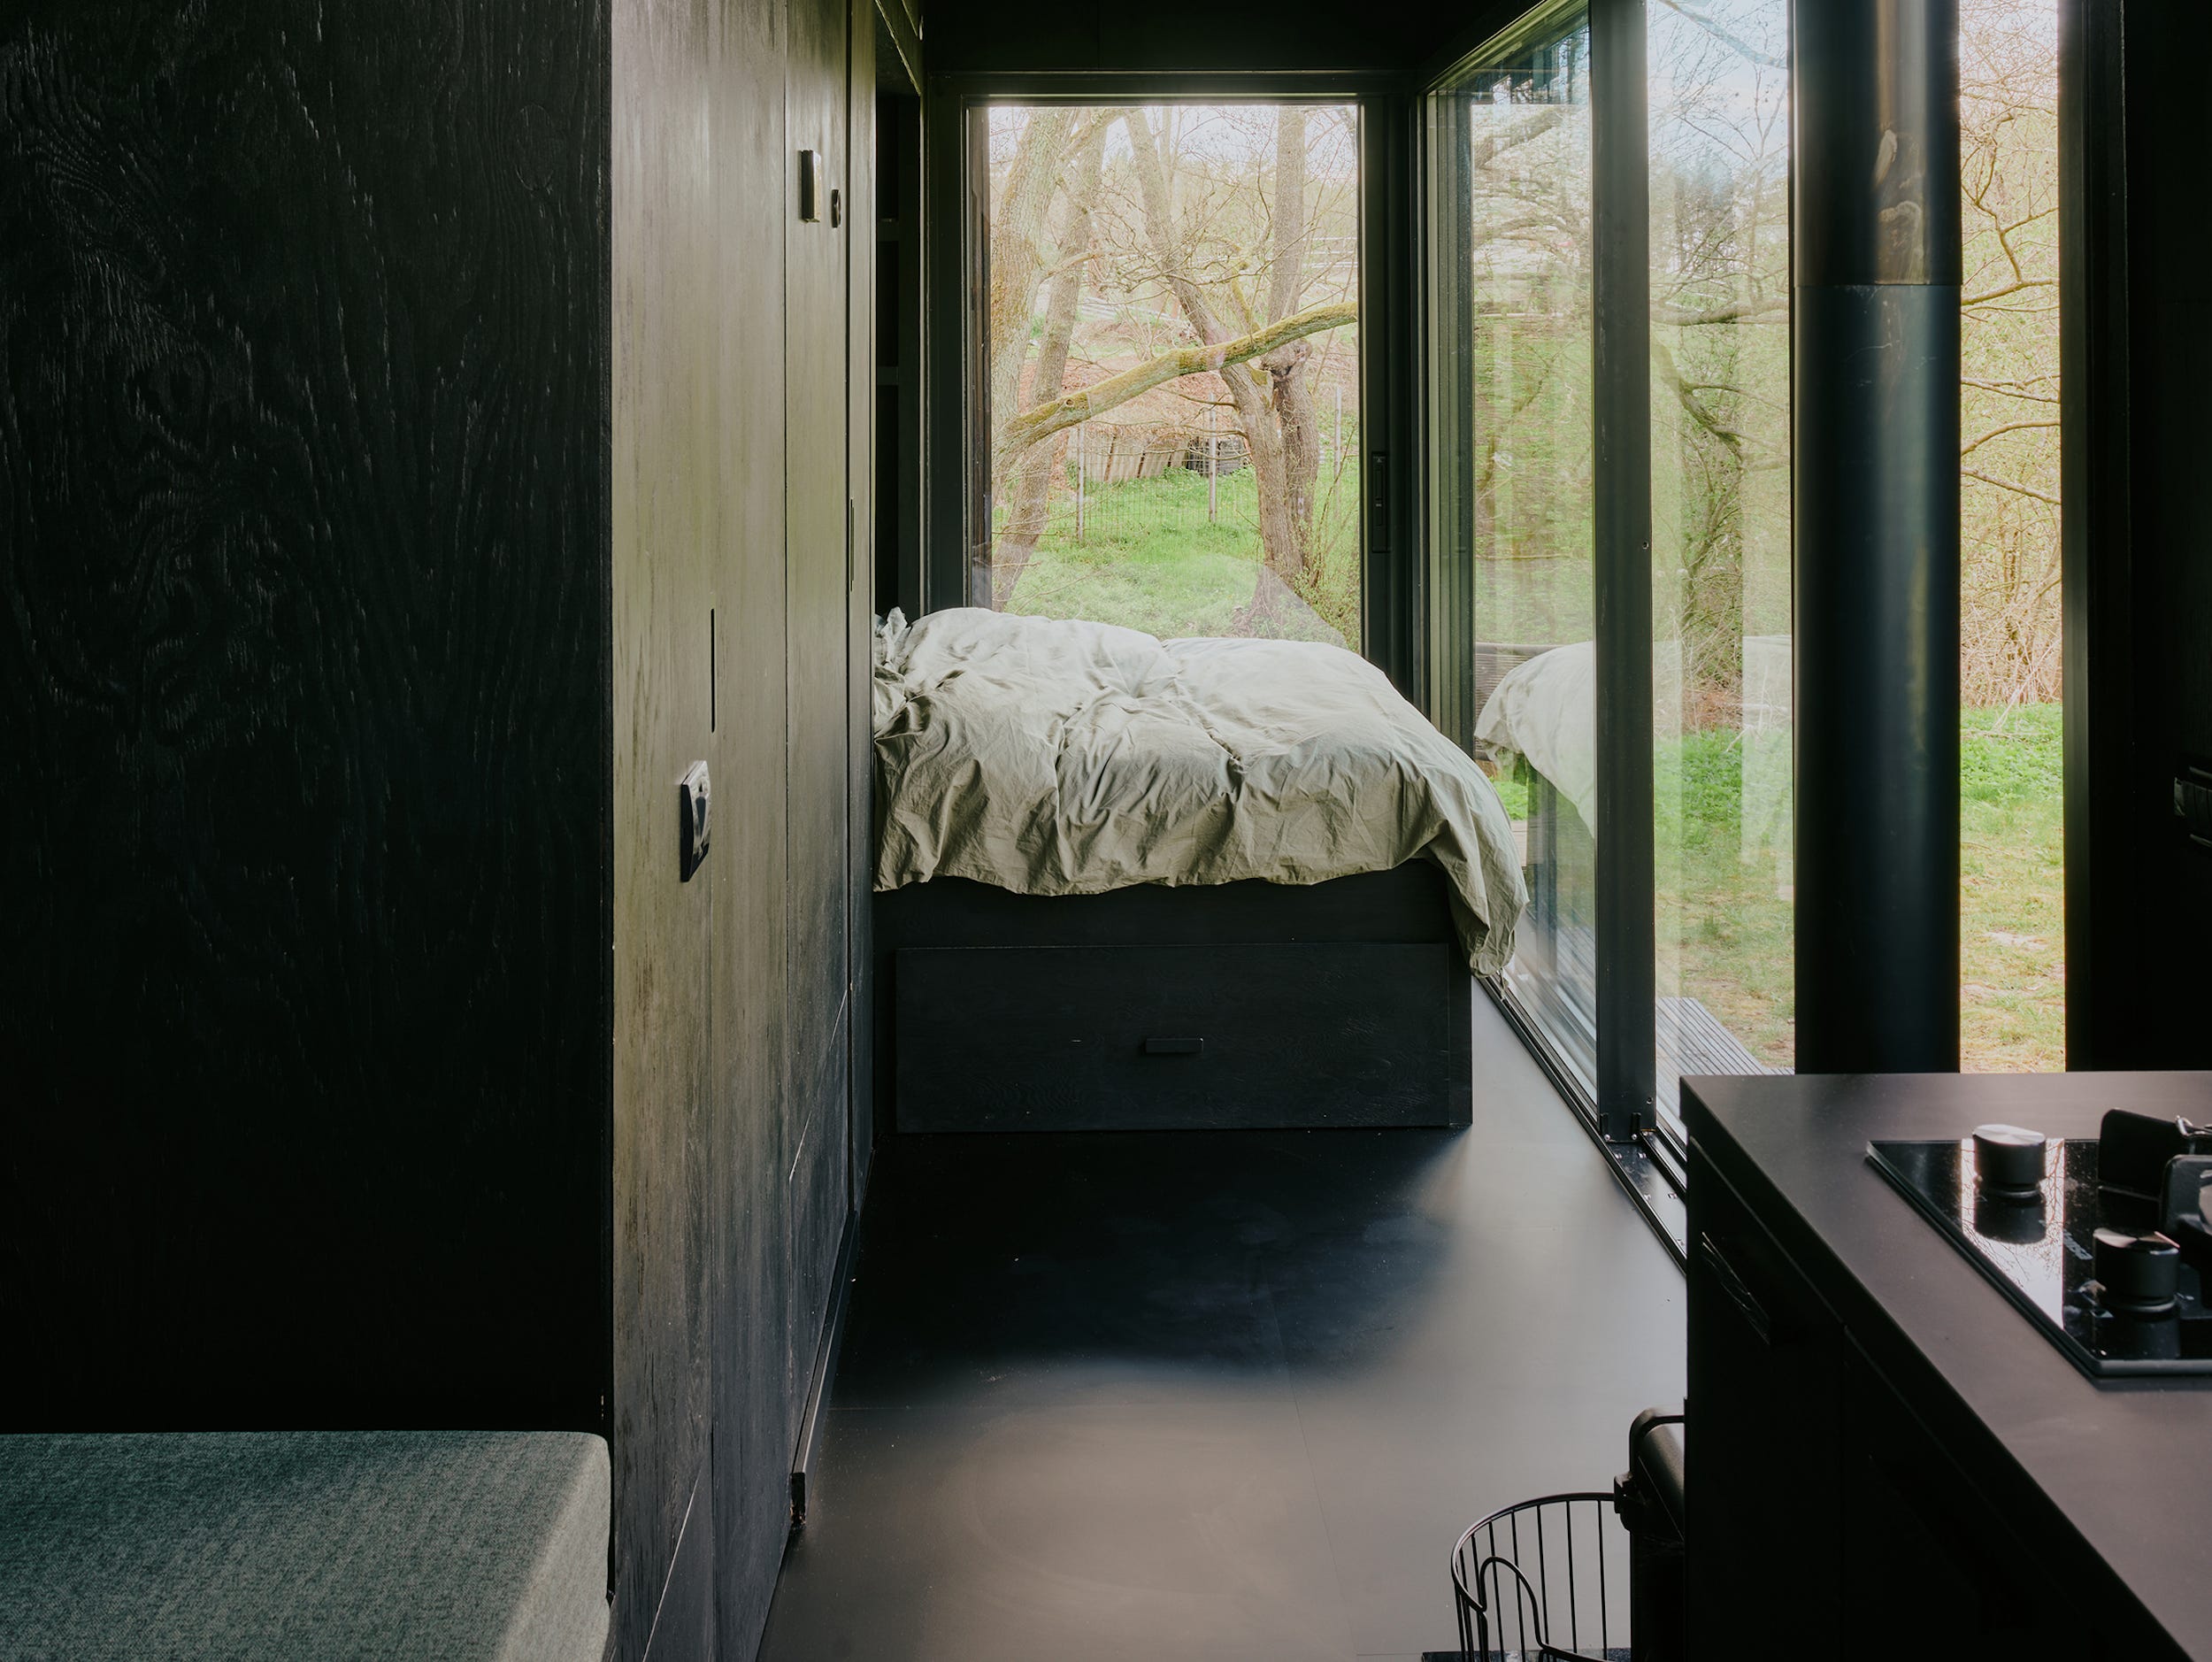 Een bed, keuken, dagbed en ramen met uitzicht op de natuur.